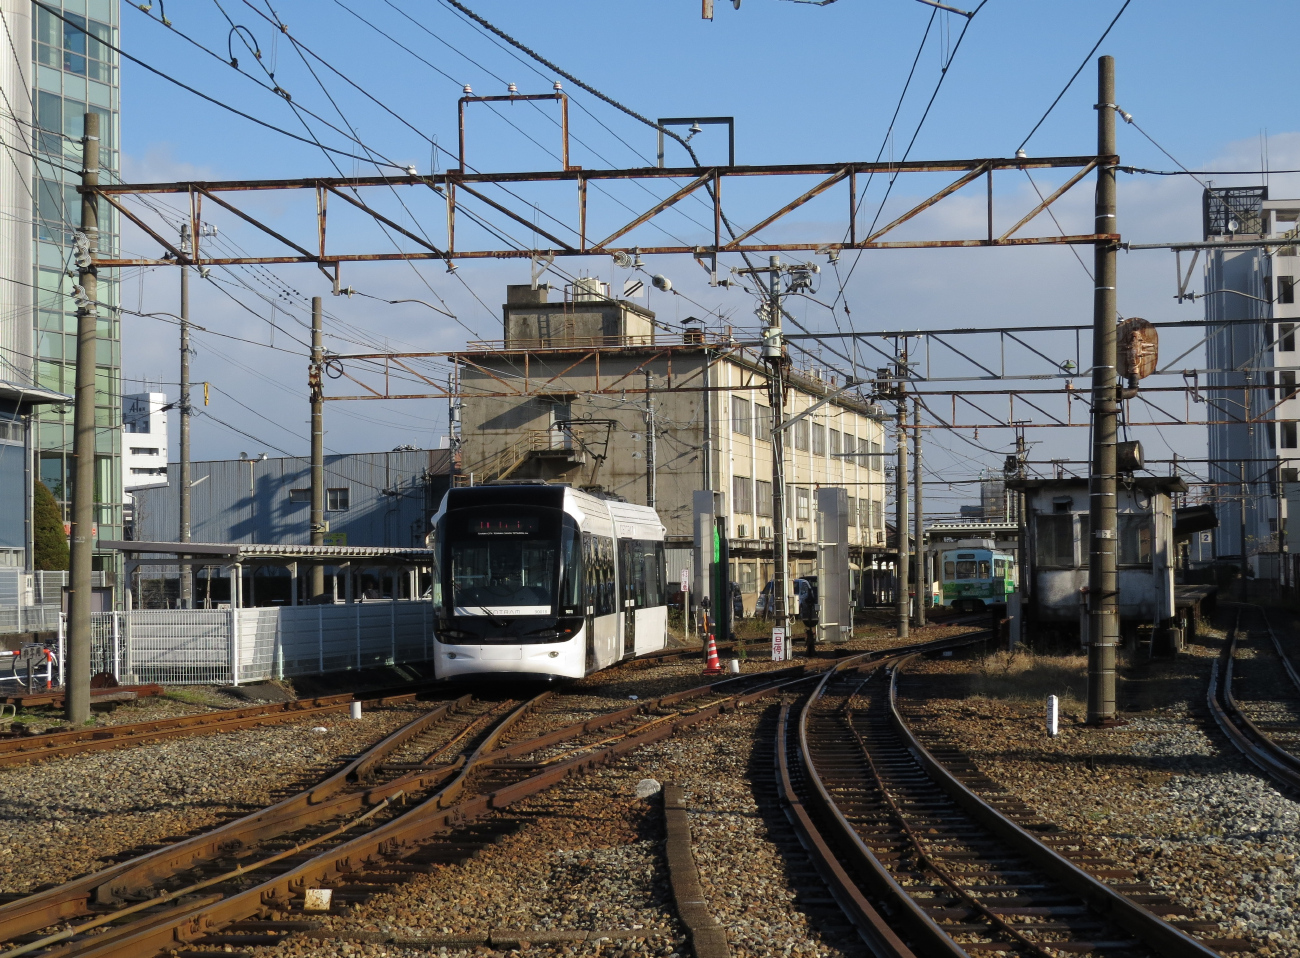 Тояма, Niigata/Bombardier TLR0600 № 9001; Тояма — Трамвайное депо (Centram); Тояма — Трамвайные линии и инфраструктура (Centram)